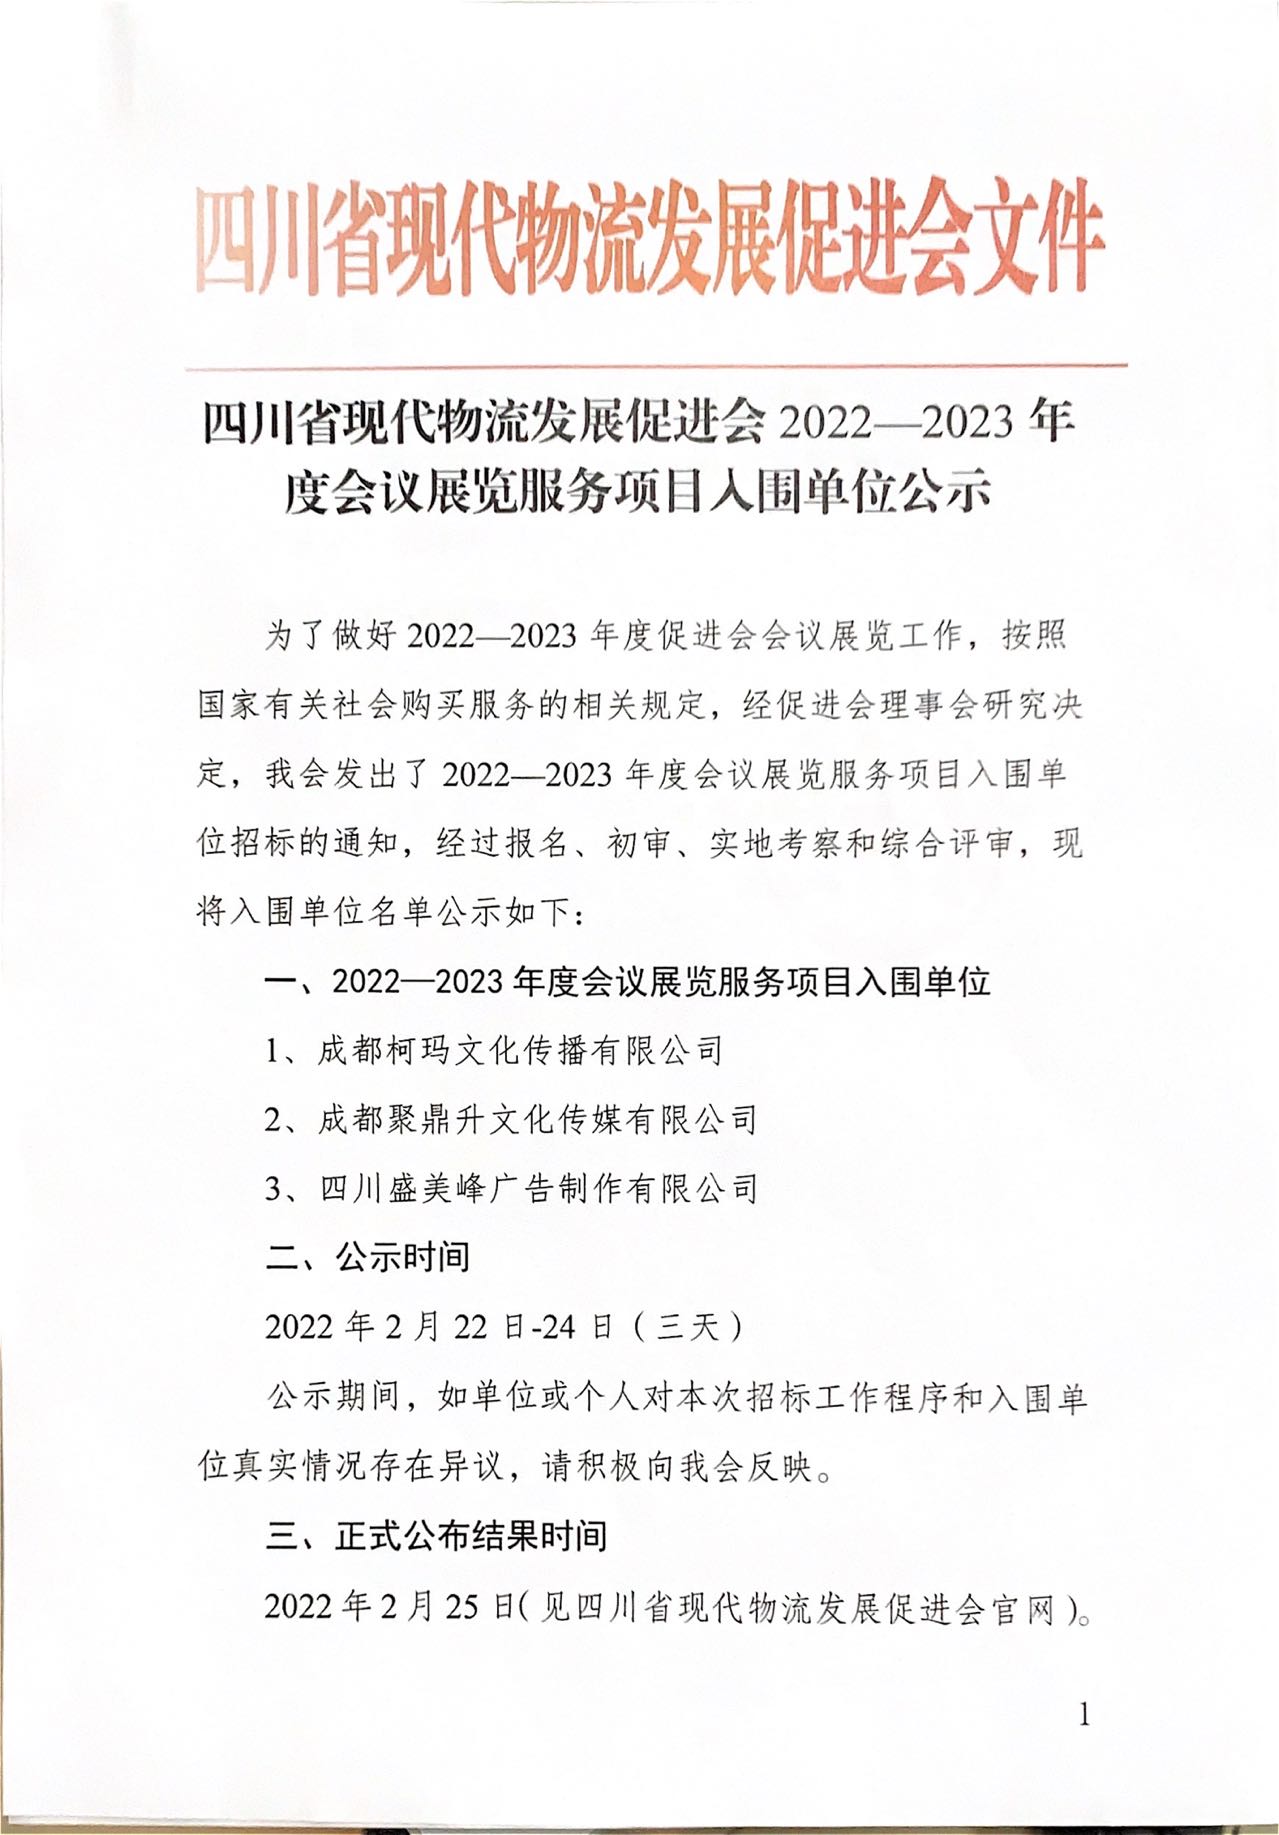 四川省现代物流发展促进会2022-2023 年度会议展览服务项目入围单位公示(图1)